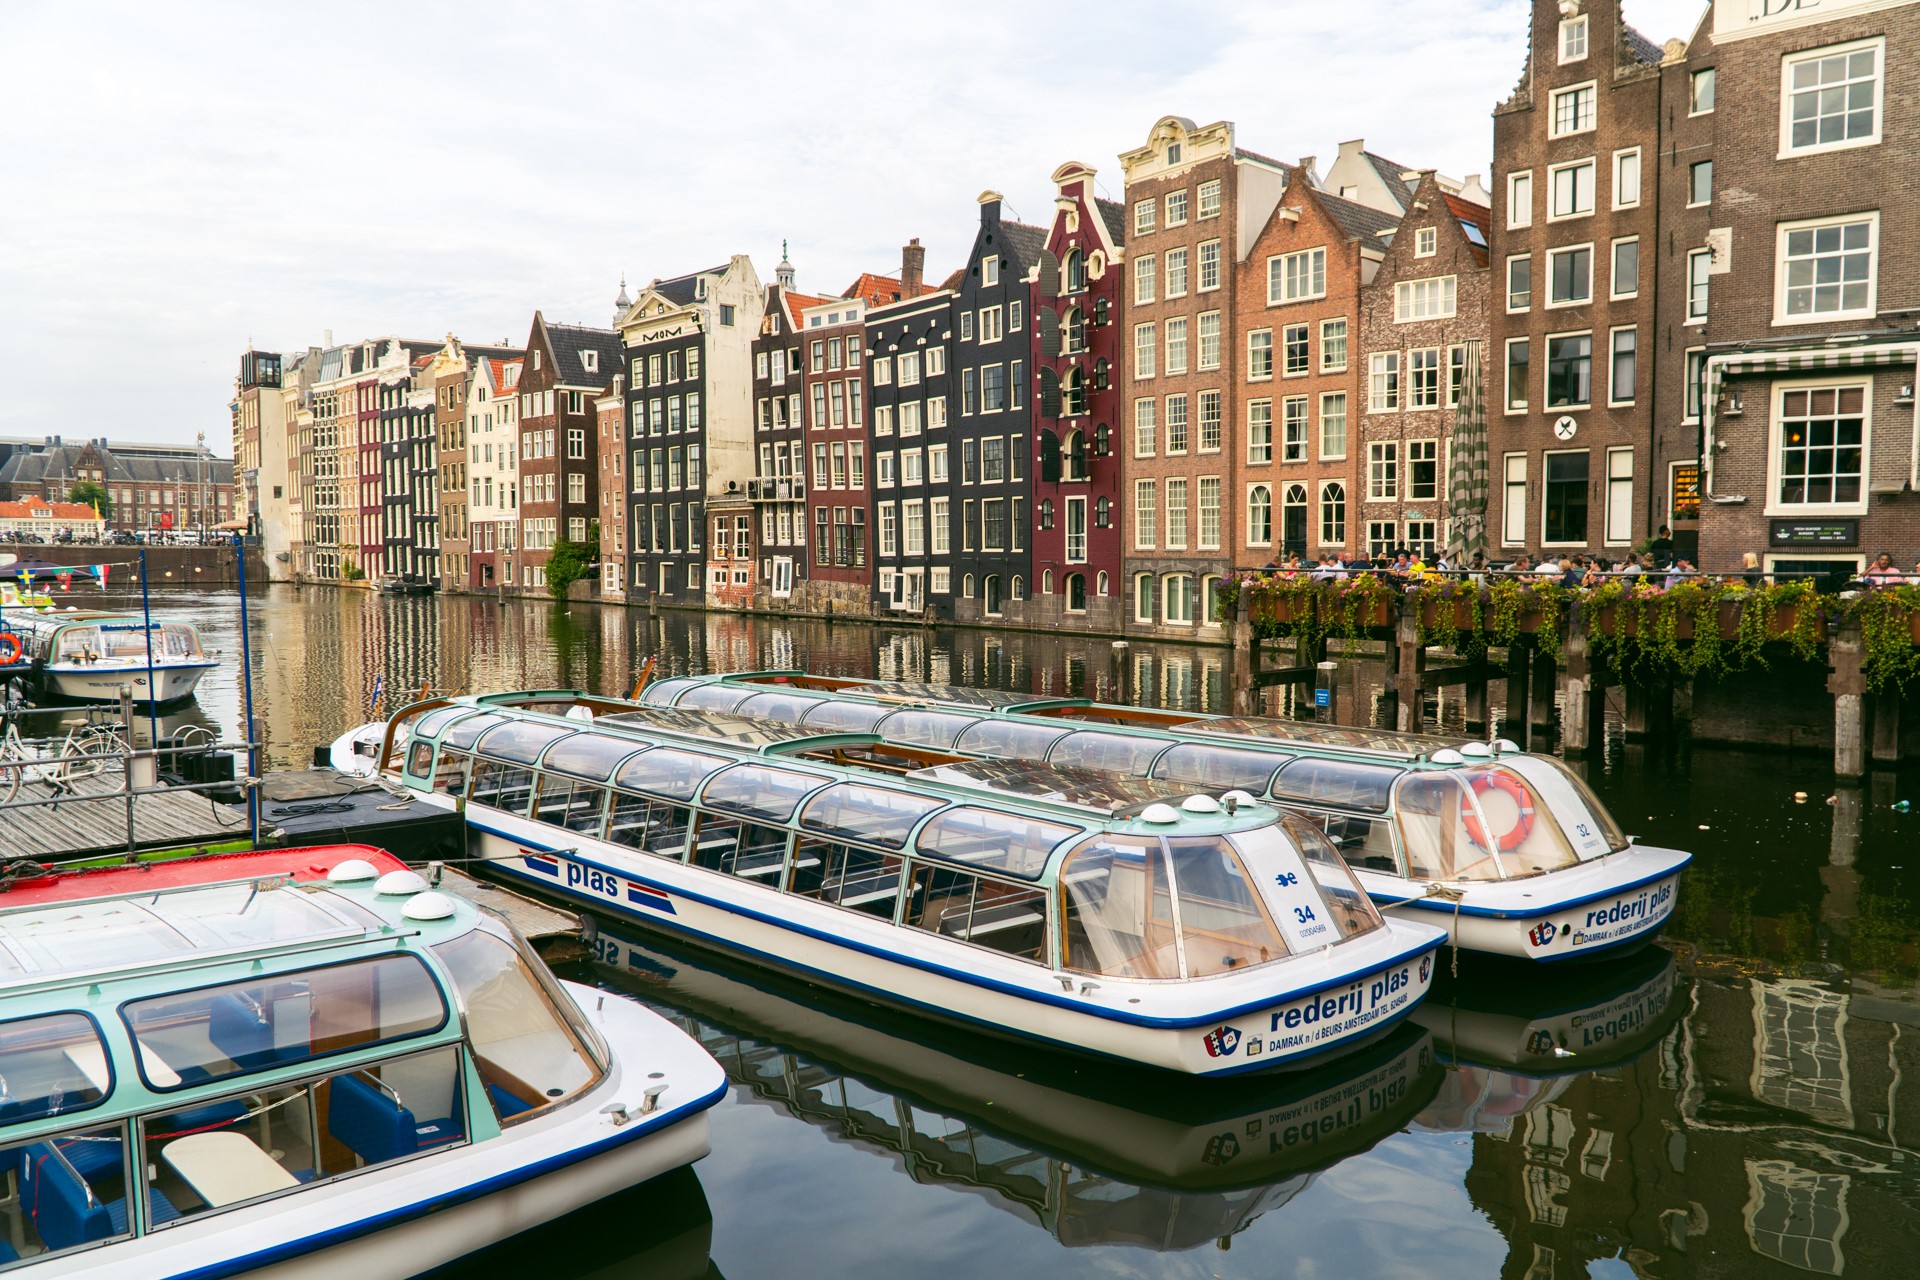 Atrakcje w Amsterdamie | Co zobaczyć w Amsterdamie?